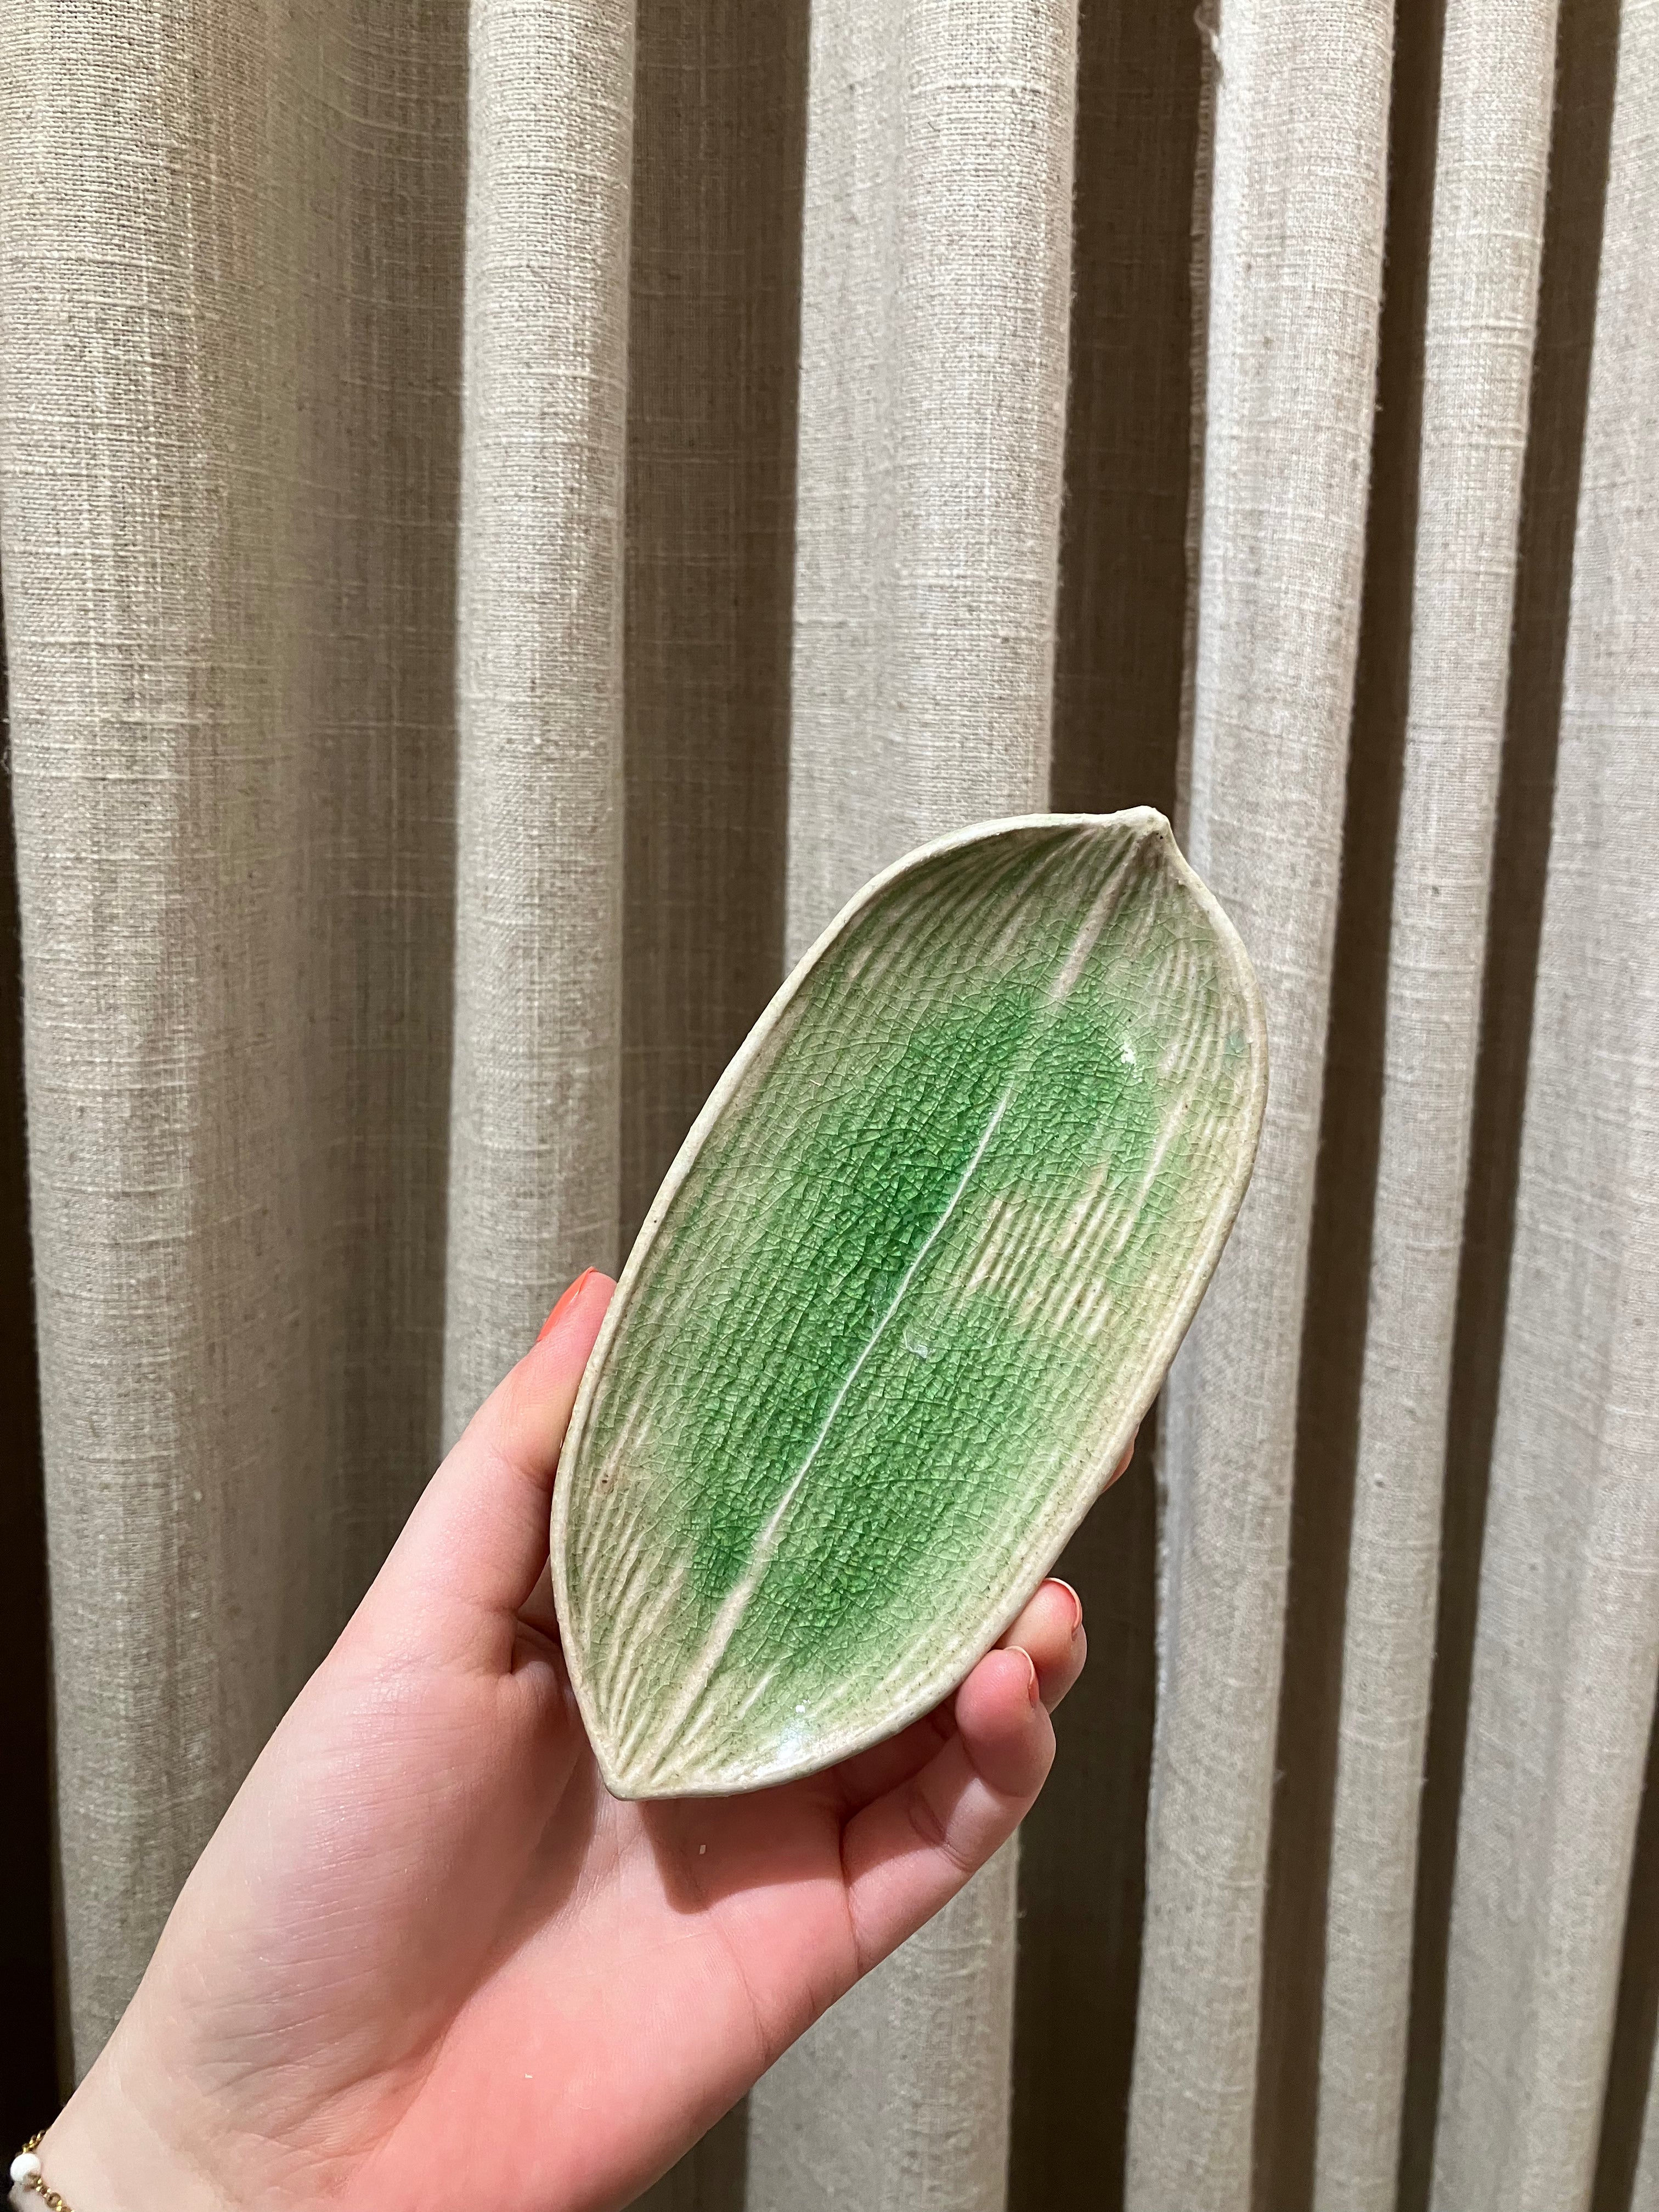 Mini plate shaped like a green leaf